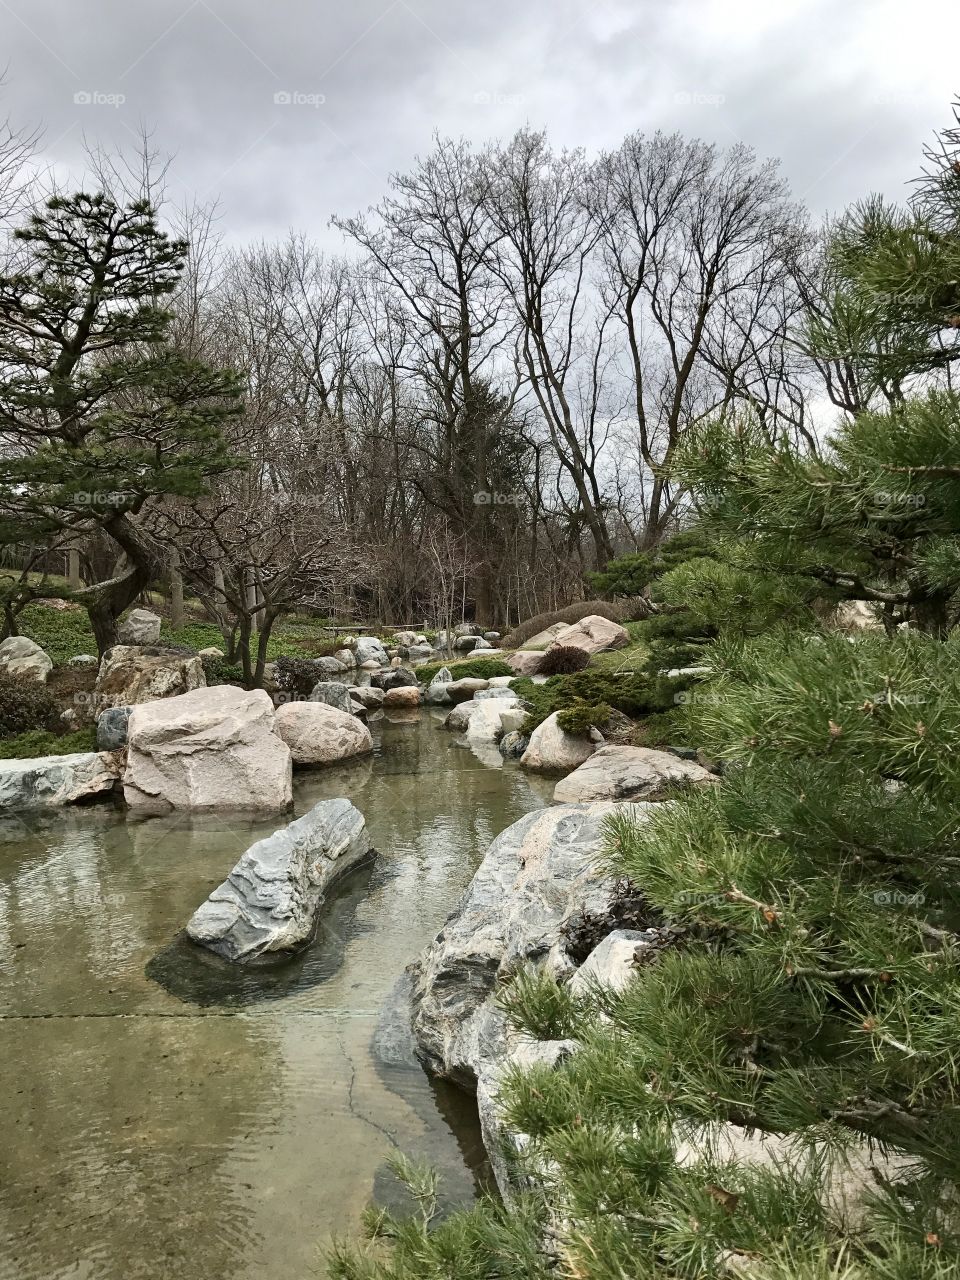 Japanese Rock garden 